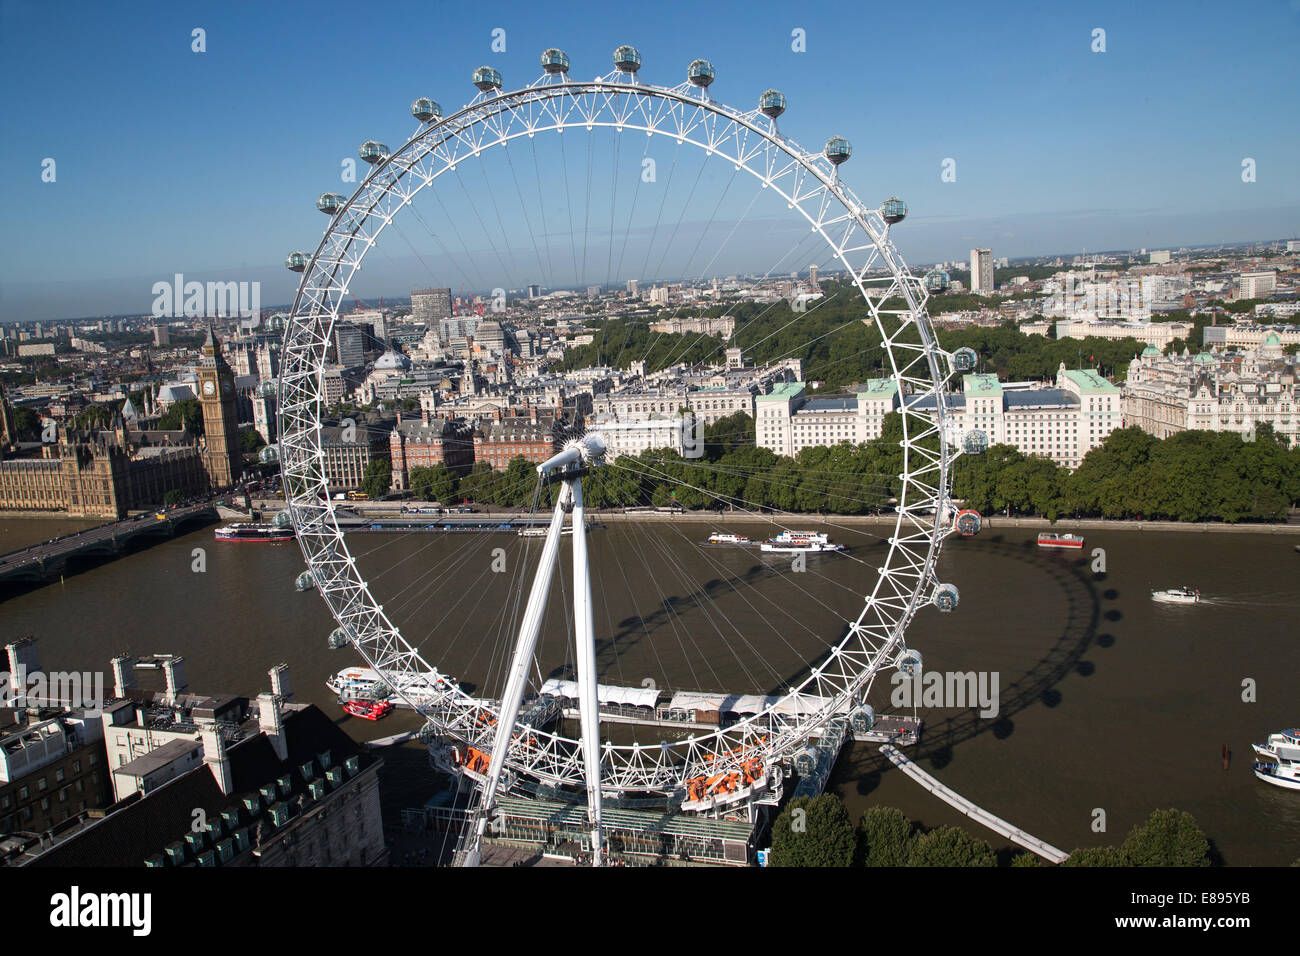 El Milenio rueda Wheel-Ferris finalizó en febrero 2000-135 de 32 metros de alto con vainas con las casas del parlamento Foto de stock